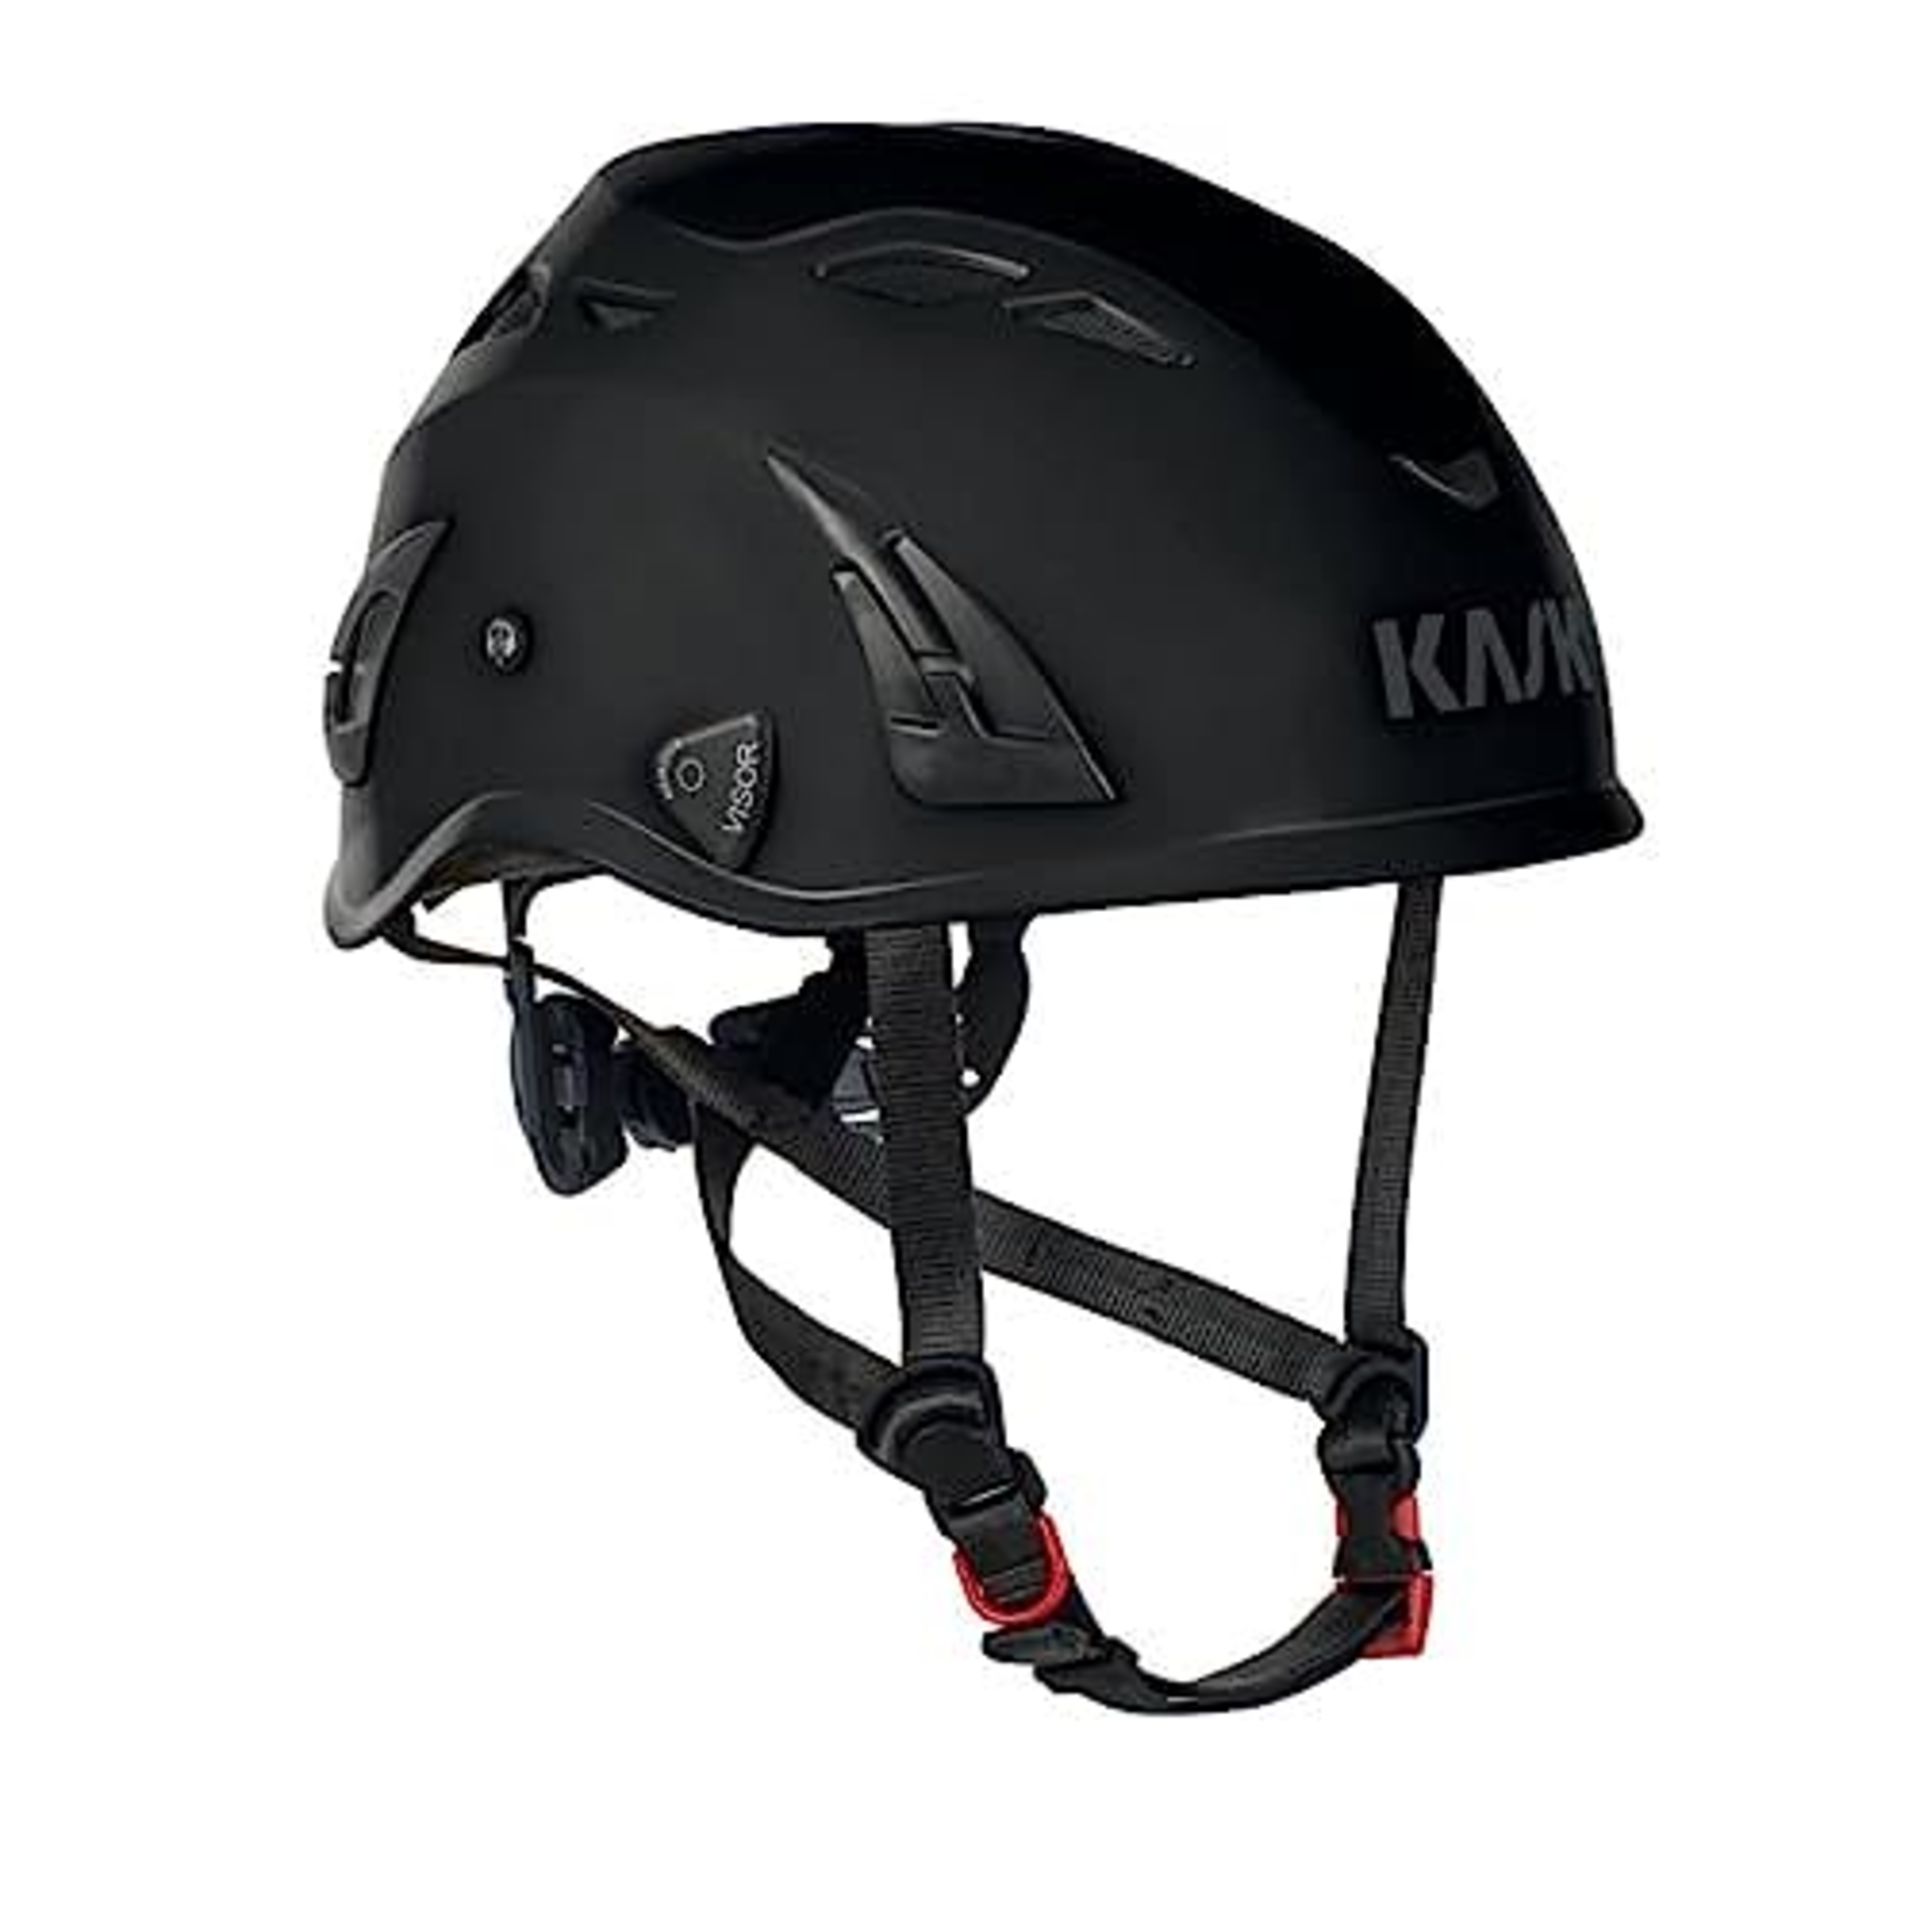 RRP £62.00 Kask AHE00005-210 Size 51-62 cm "Superplasma PL" Helmet - Black